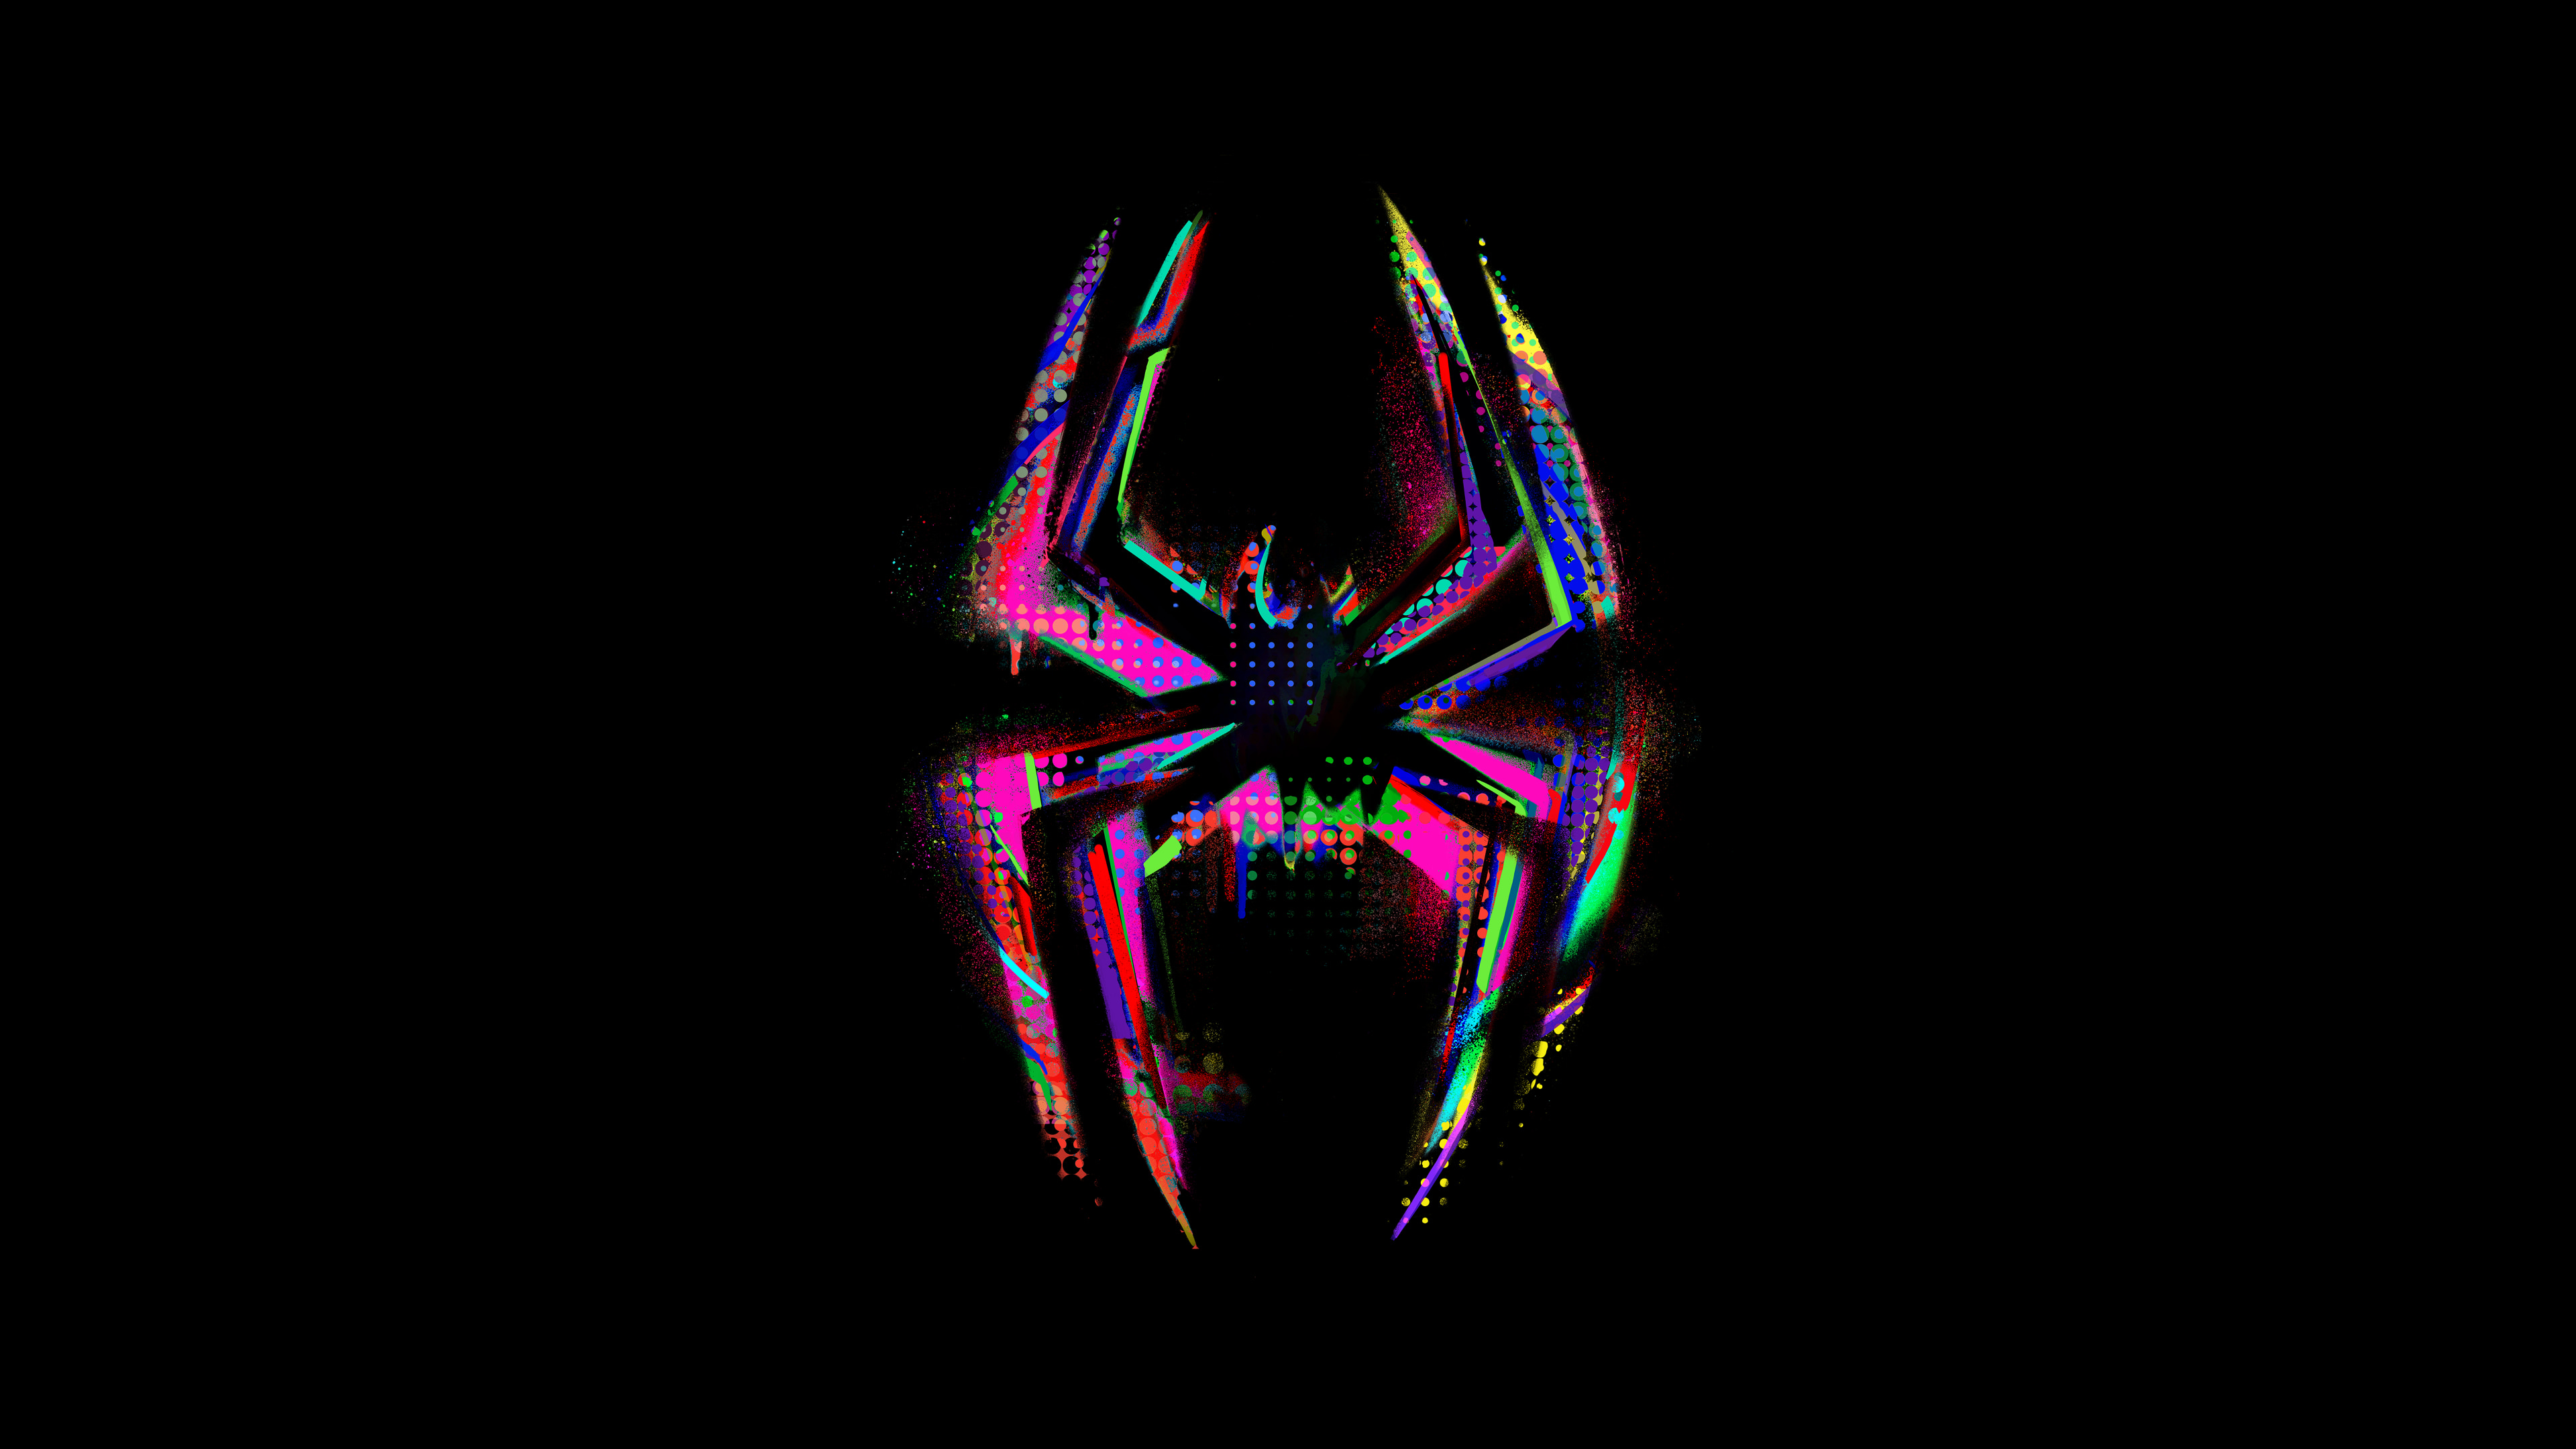 Movie Spider-Man: Across The Spider-Verse 4k Ultra HD Wallpaper, spider man  across the spider verse wallpaper 